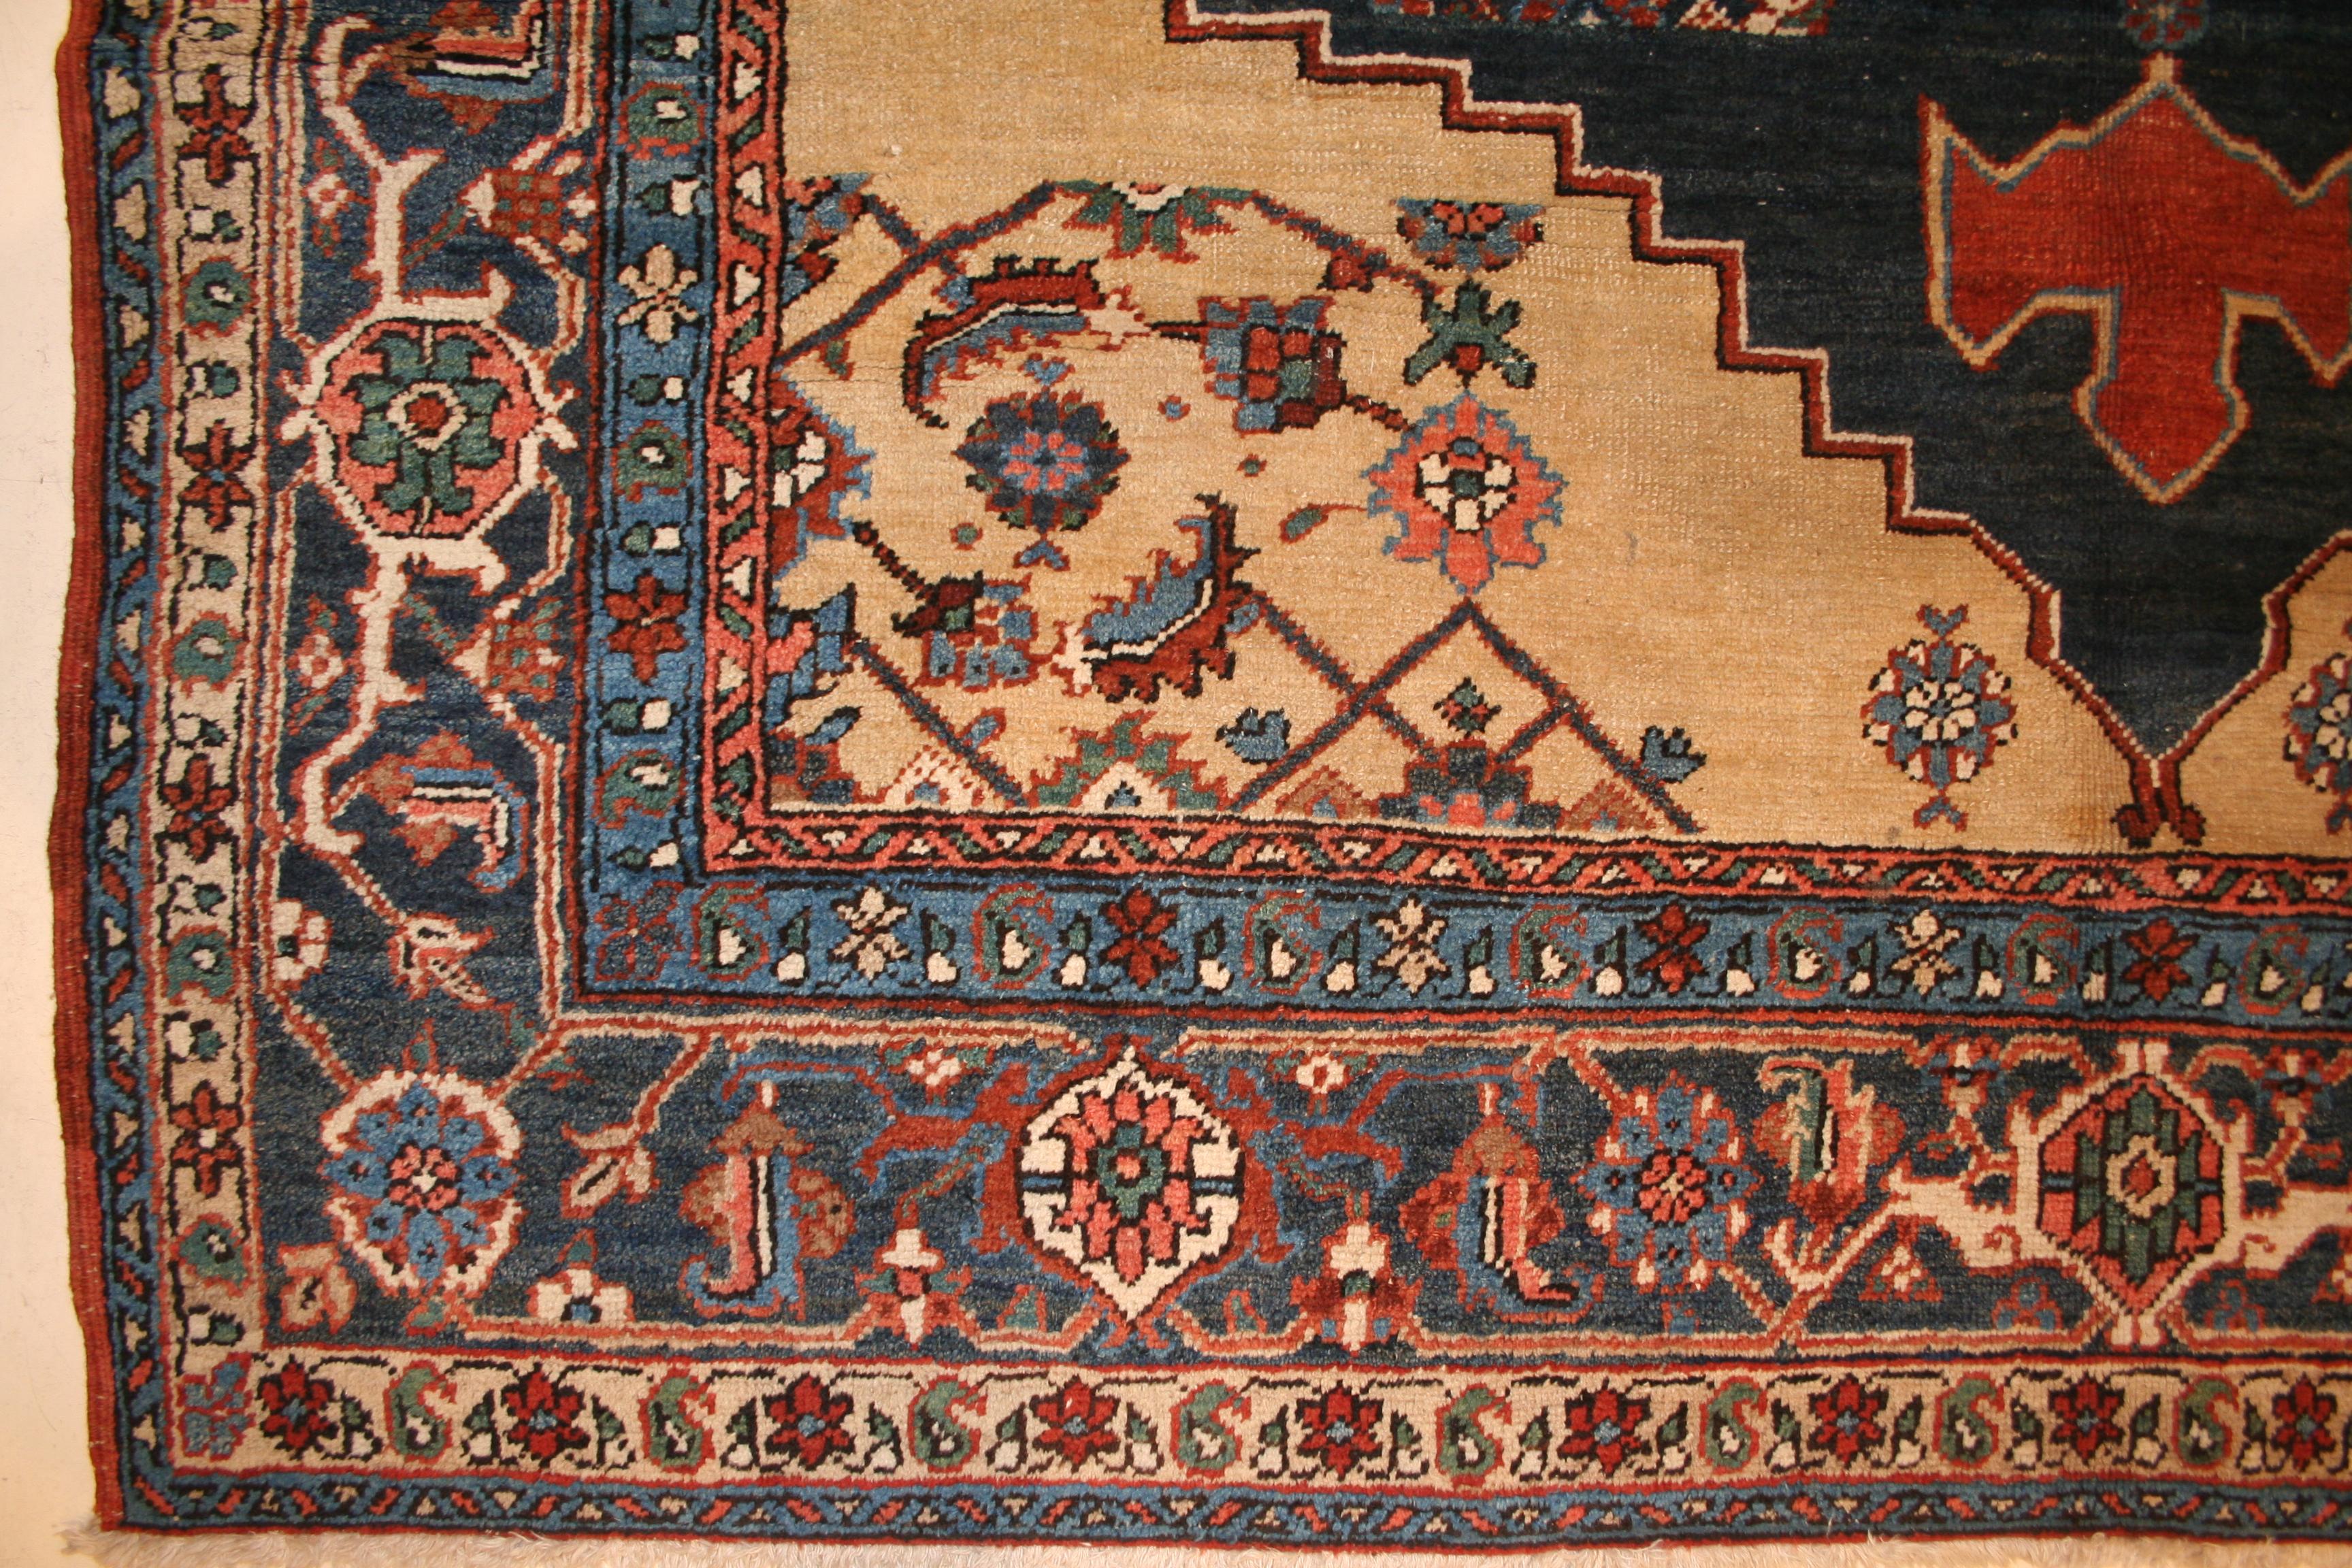 Ein sehr ungewöhnlicher Heriz-Teppich mit einem Medaillon-Muster, das in einer Weise gegliedert ist, die darauf hindeutet, dass er durchaus als Mustertuch (vaghireh) gedacht gewesen sein könnte. Durch das Weben von Teppichen dieser Art würden die